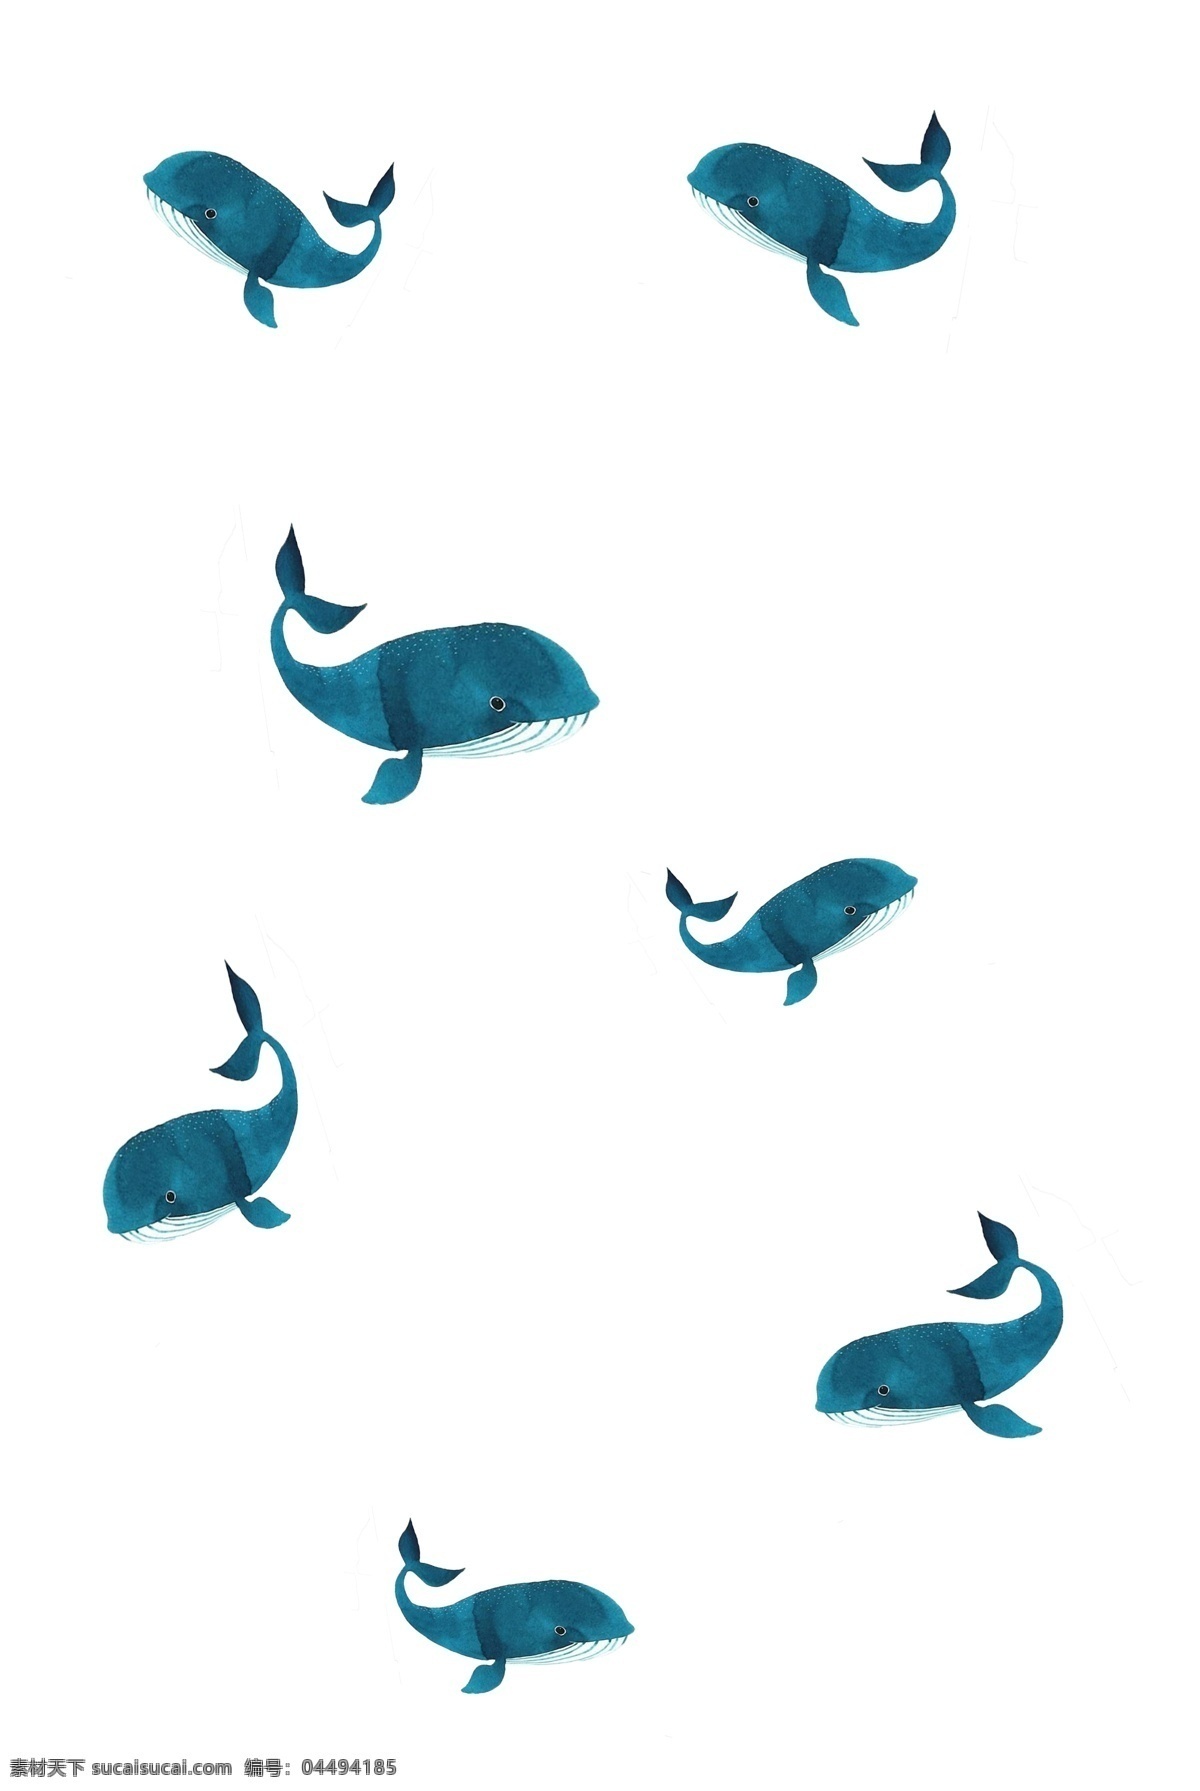 手绘 生动 鲸鱼 漂浮 唯美 创意png 手绘png 简约png 大气png 生动png 淡雅png 用于 学习交流 画报制作 装饰等